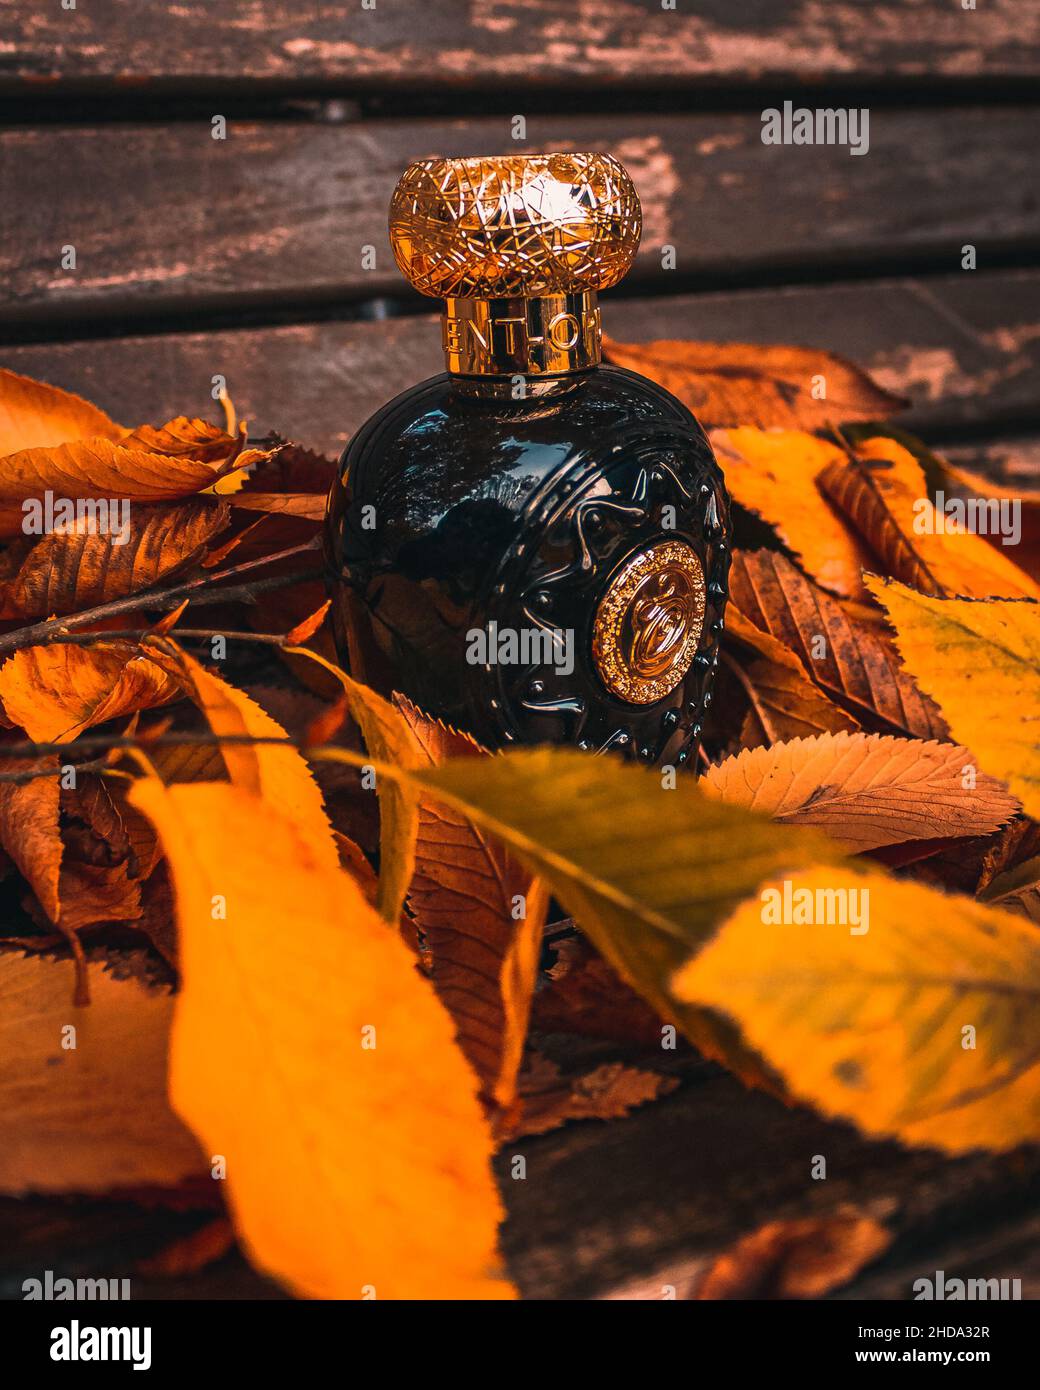 Una botella de perfume árabe con una textura lujosa en una escena otoñal Foto de stock